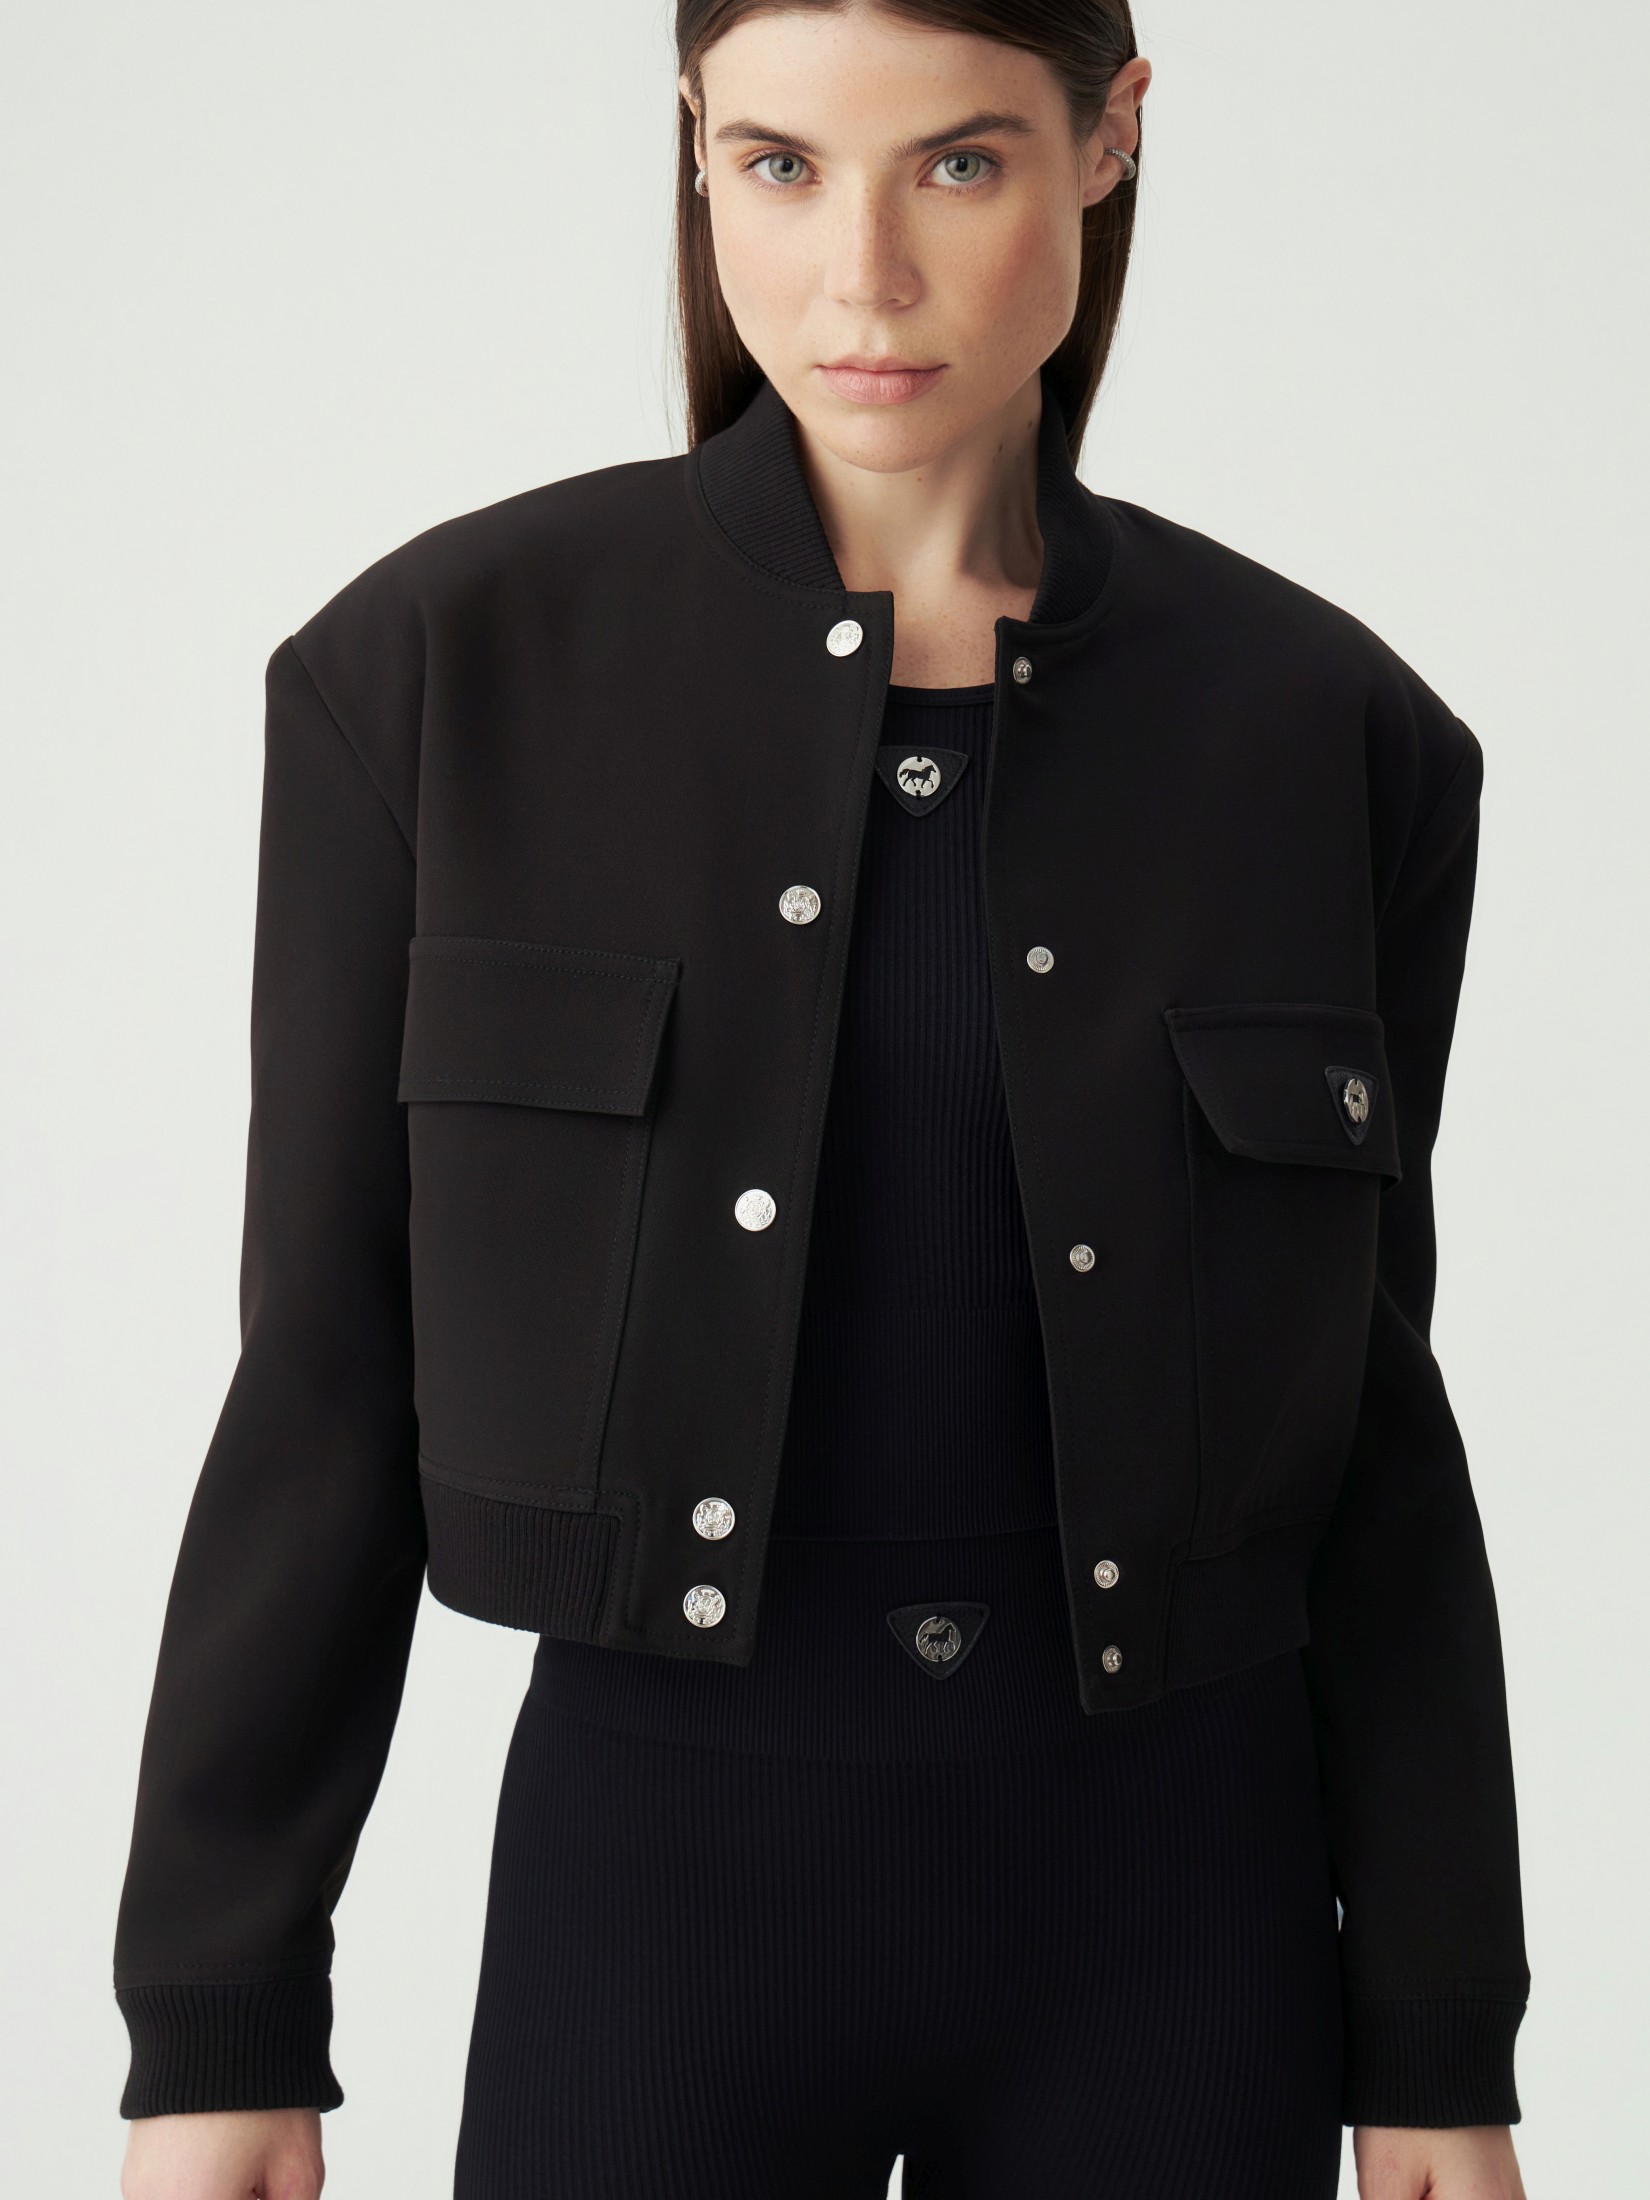 Куртка женская черная фотографии